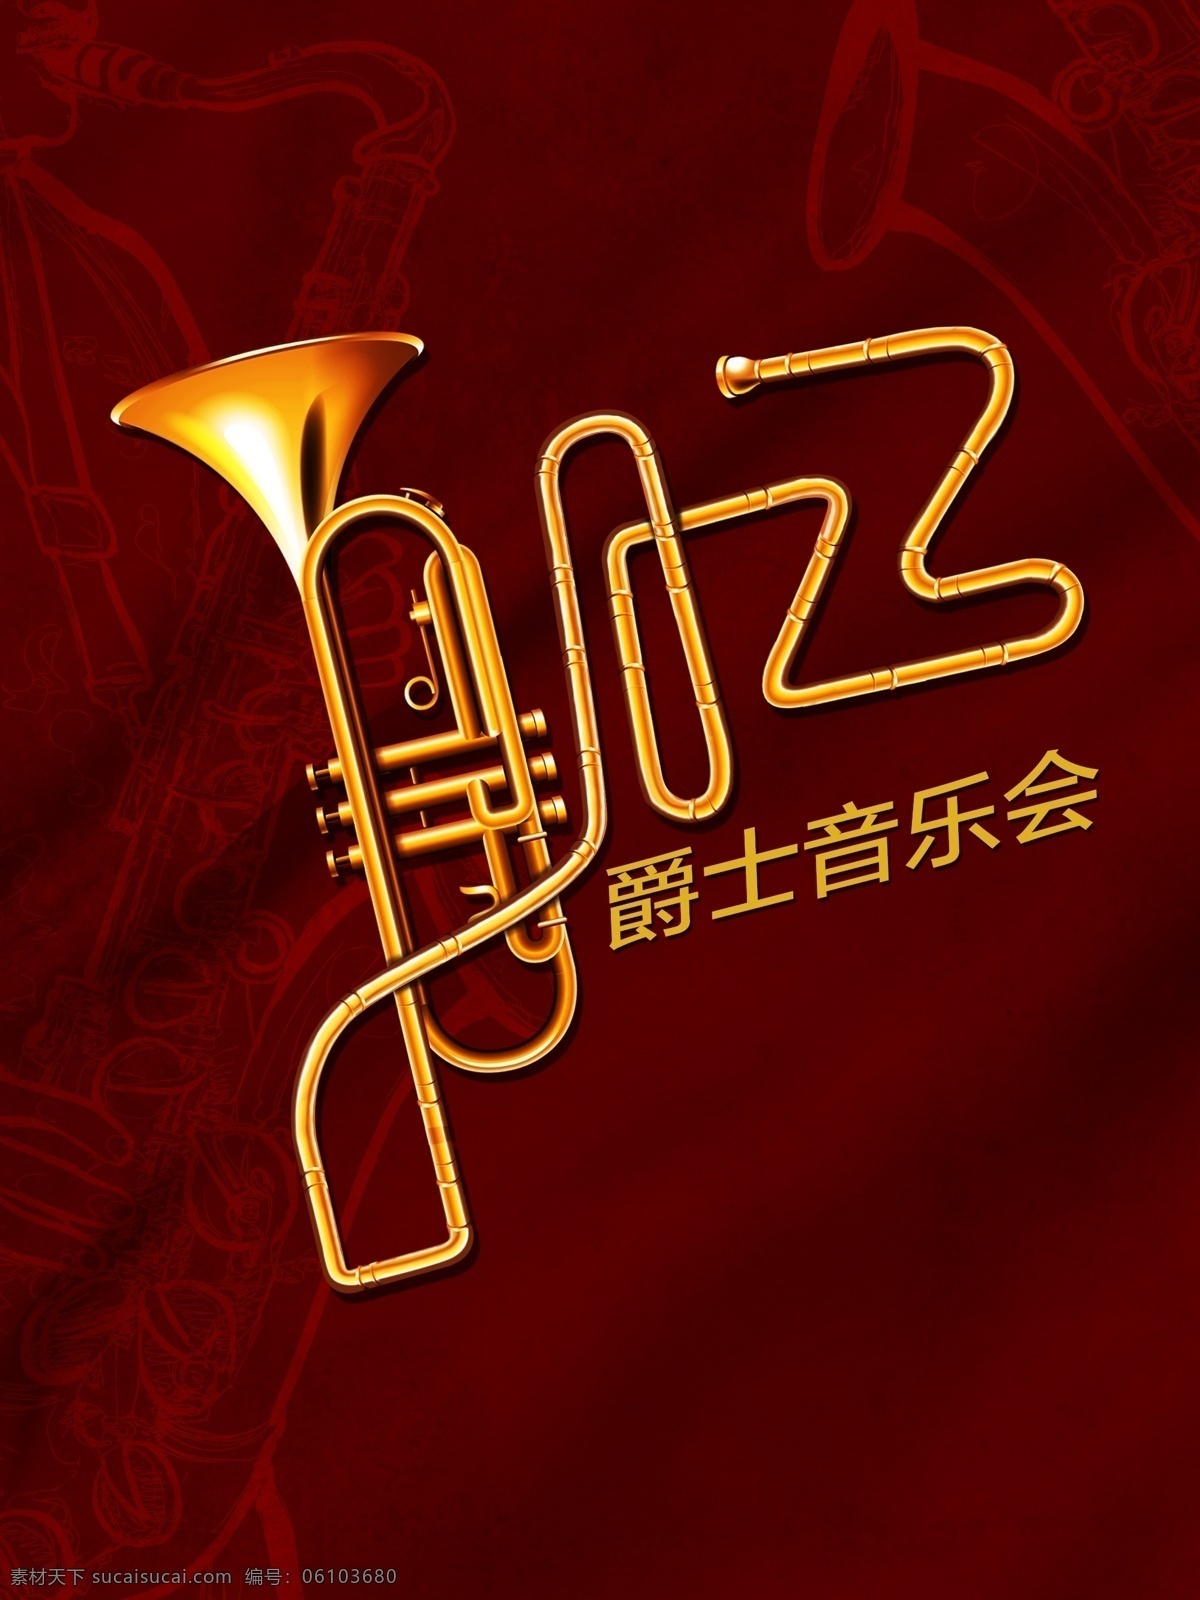 爵士乐 音乐会 海报 jazz 爵士音乐会 音乐海报 红色背景 手绘萨克斯 字体